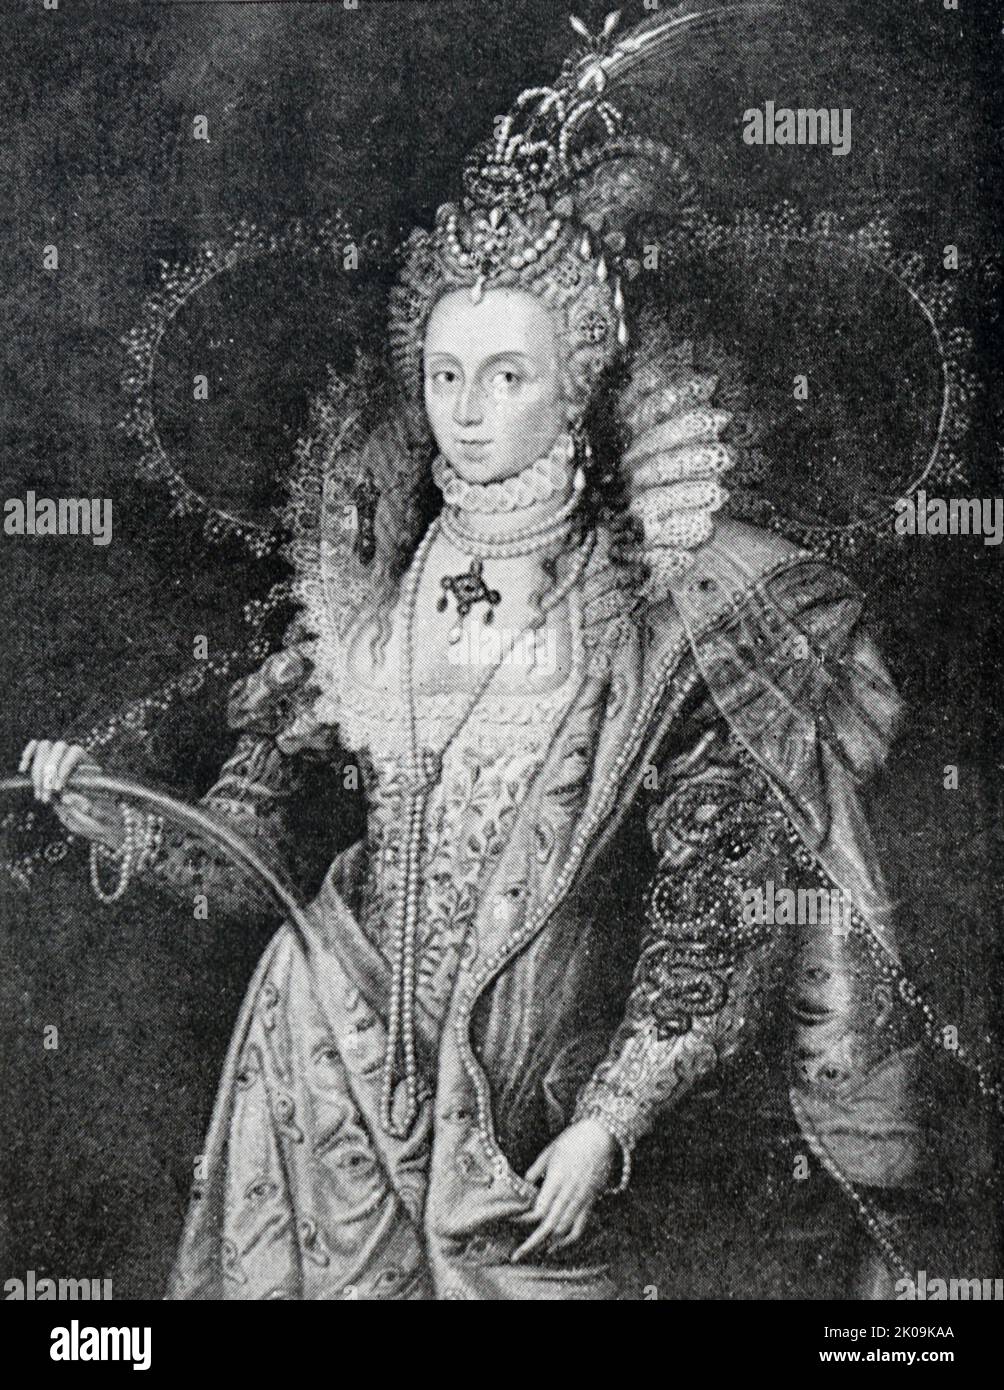 Elizabeth i (Londra, 7 settembre 1533 – Londra, 24 marzo 1603) è stata regina d'Inghilterra e d'Irlanda dal 17 novembre 1558 fino alla sua morte nel 1603. A volte chiamata la Vergine Regina, Elisabetta fu l'ultimo dei cinque monarchi della Casa di Tudor. Foto Stock